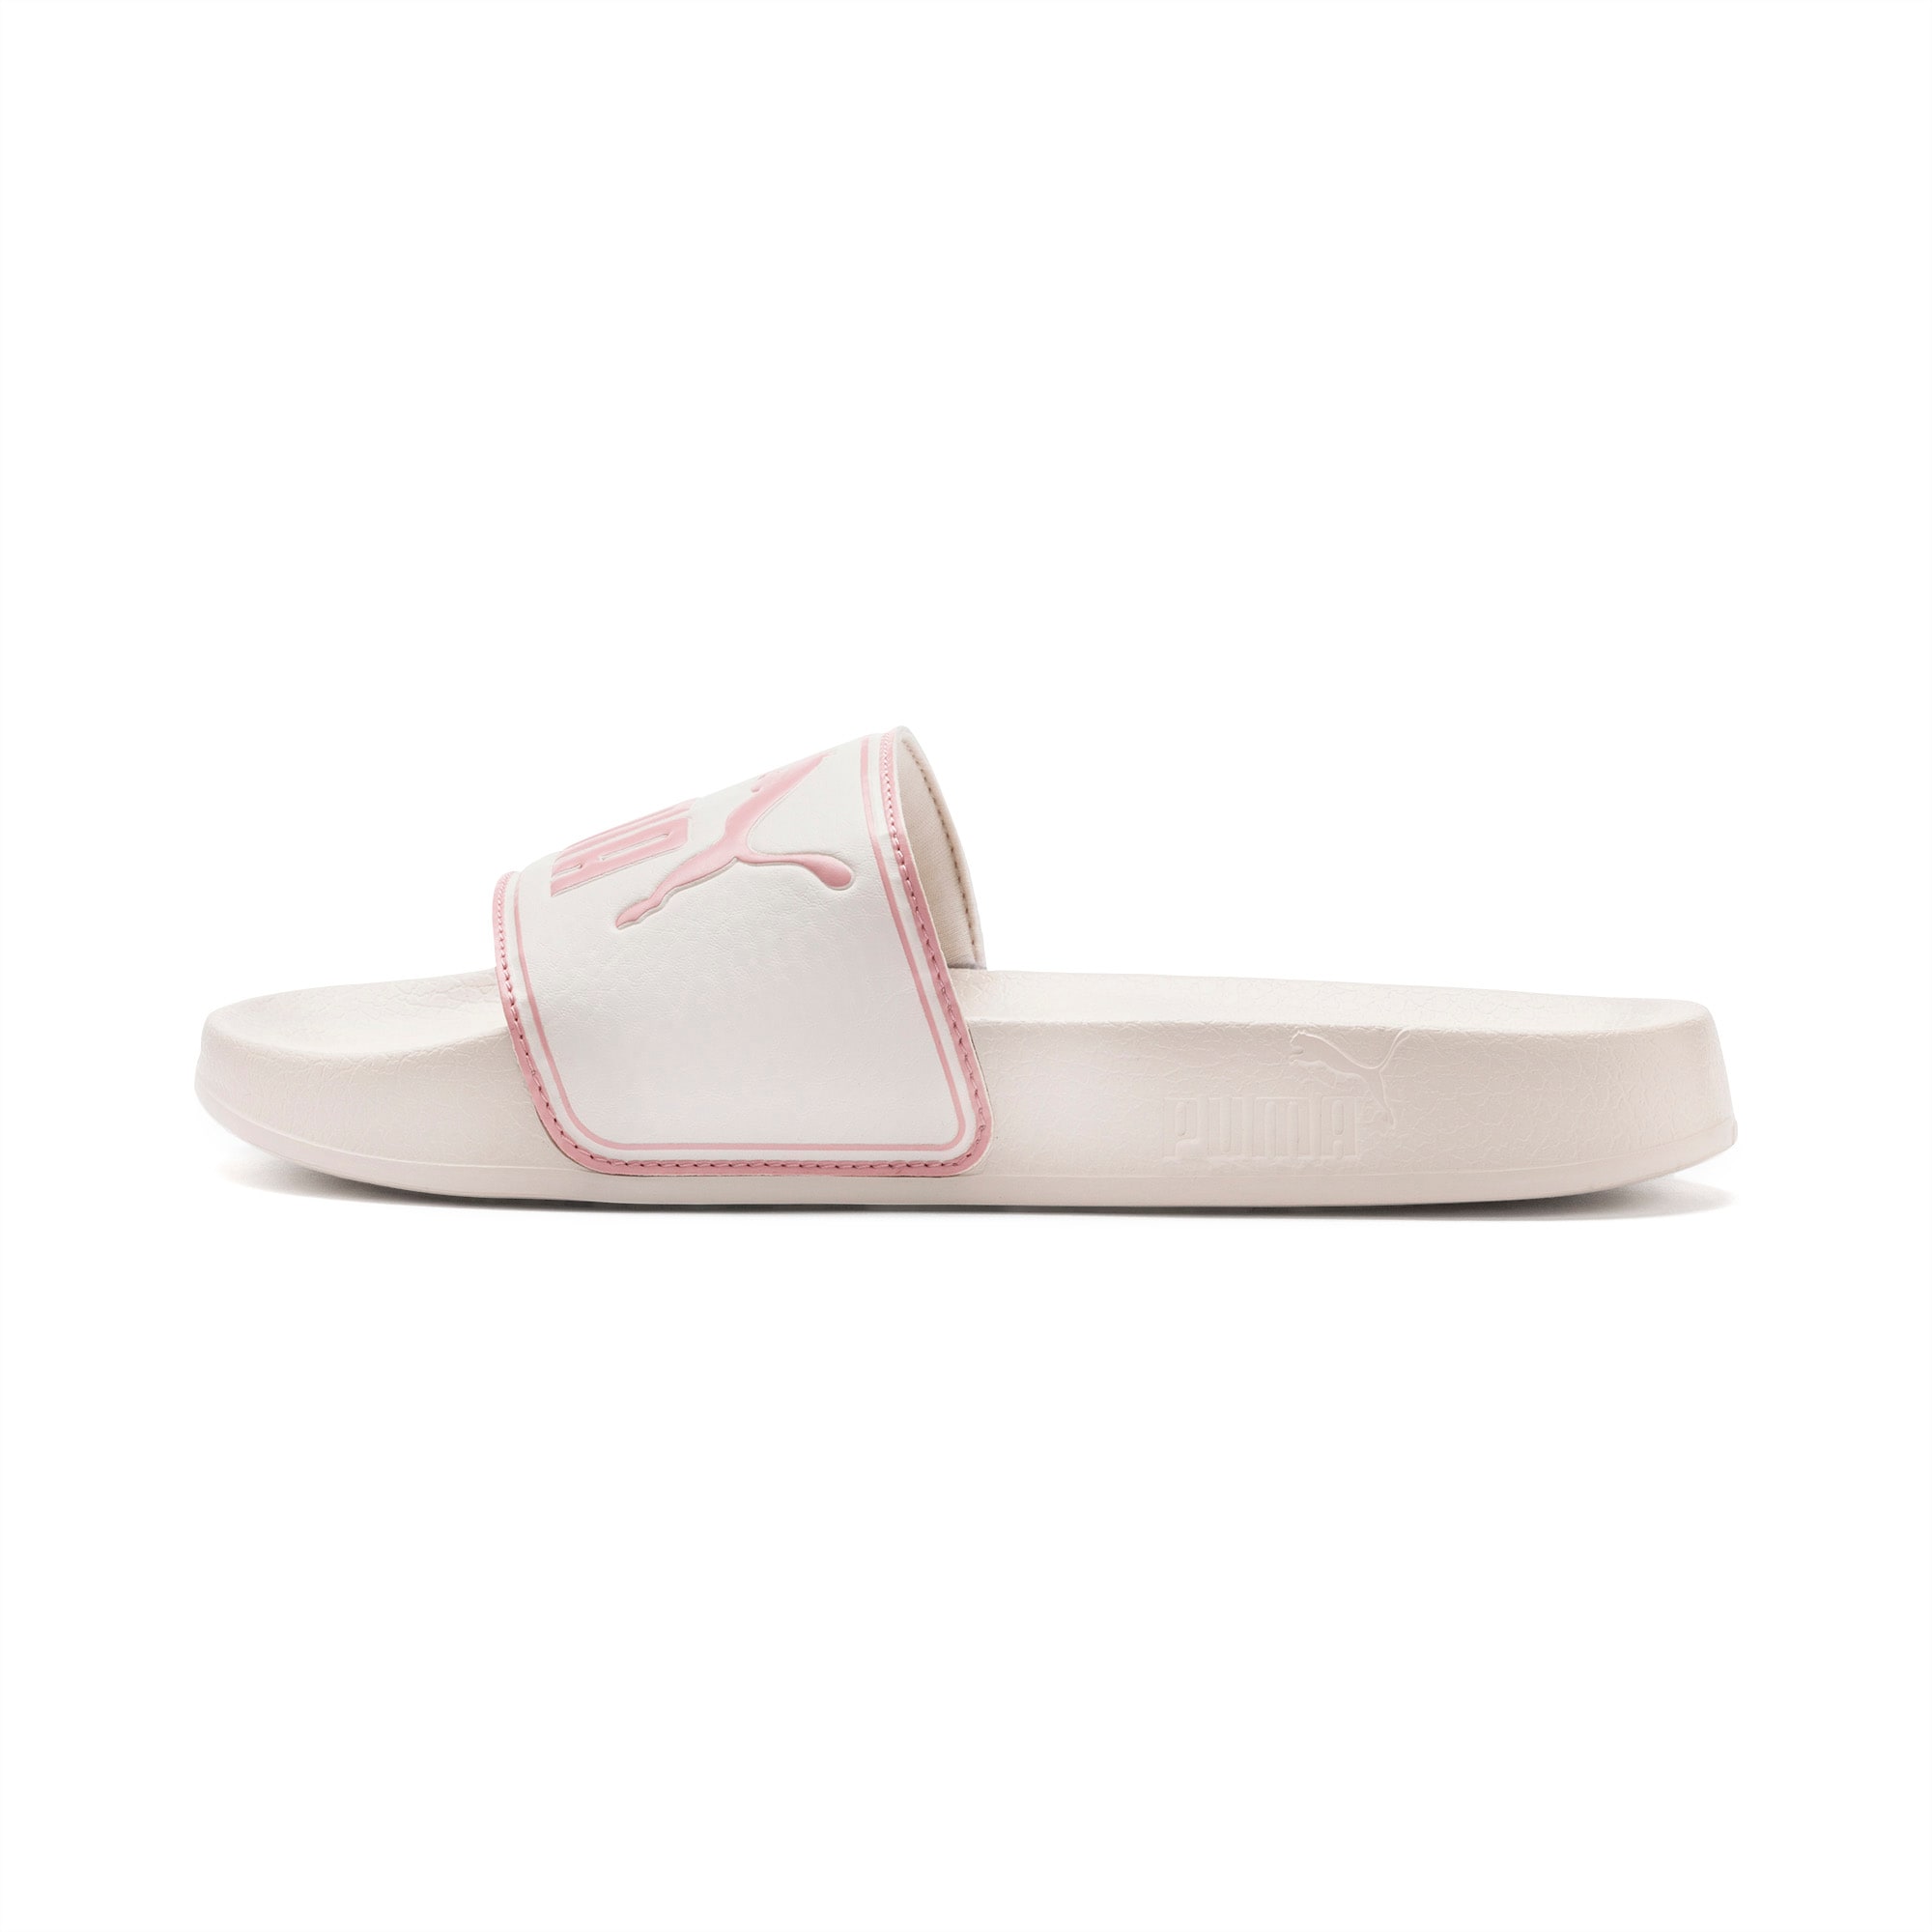 Leadcat Slide Sandals, Pastel Parchment-Bridal Rose, large-SEA